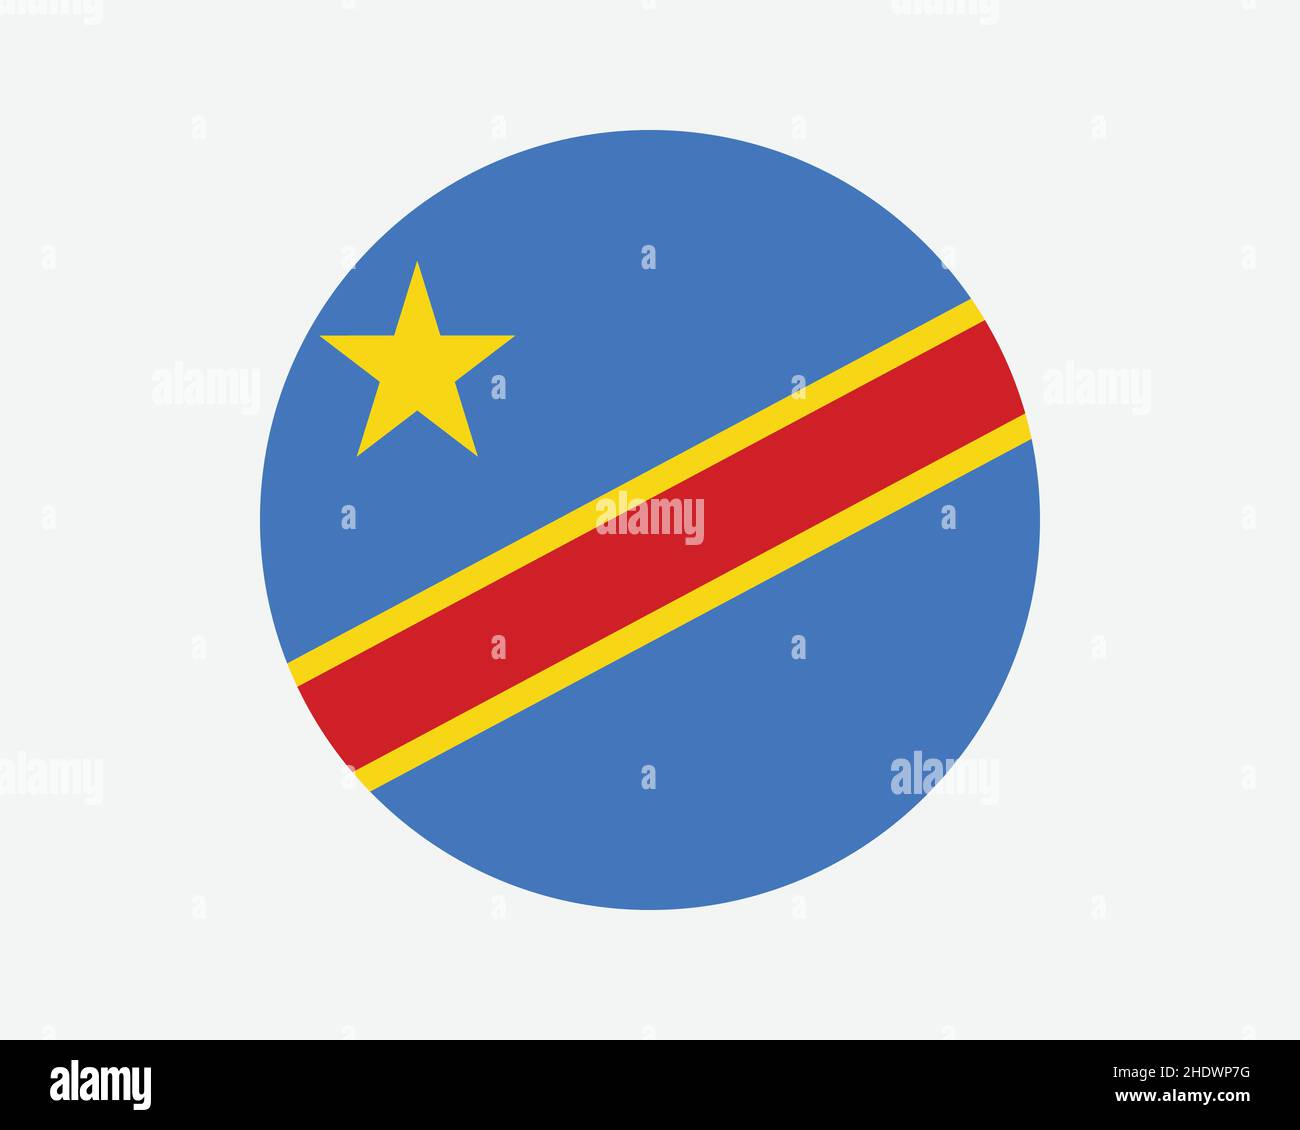 https://c8.alamy.com/compfr/2hdwp7g/congo-kinshasa-drapeau-de-pays-circulaire-drapeau-national-de-la-rdc-republique-democratique-du-congo-cercle-forme-bouton-banniere-illustration-du-vecteur-eps-2hdwp7g.jpg